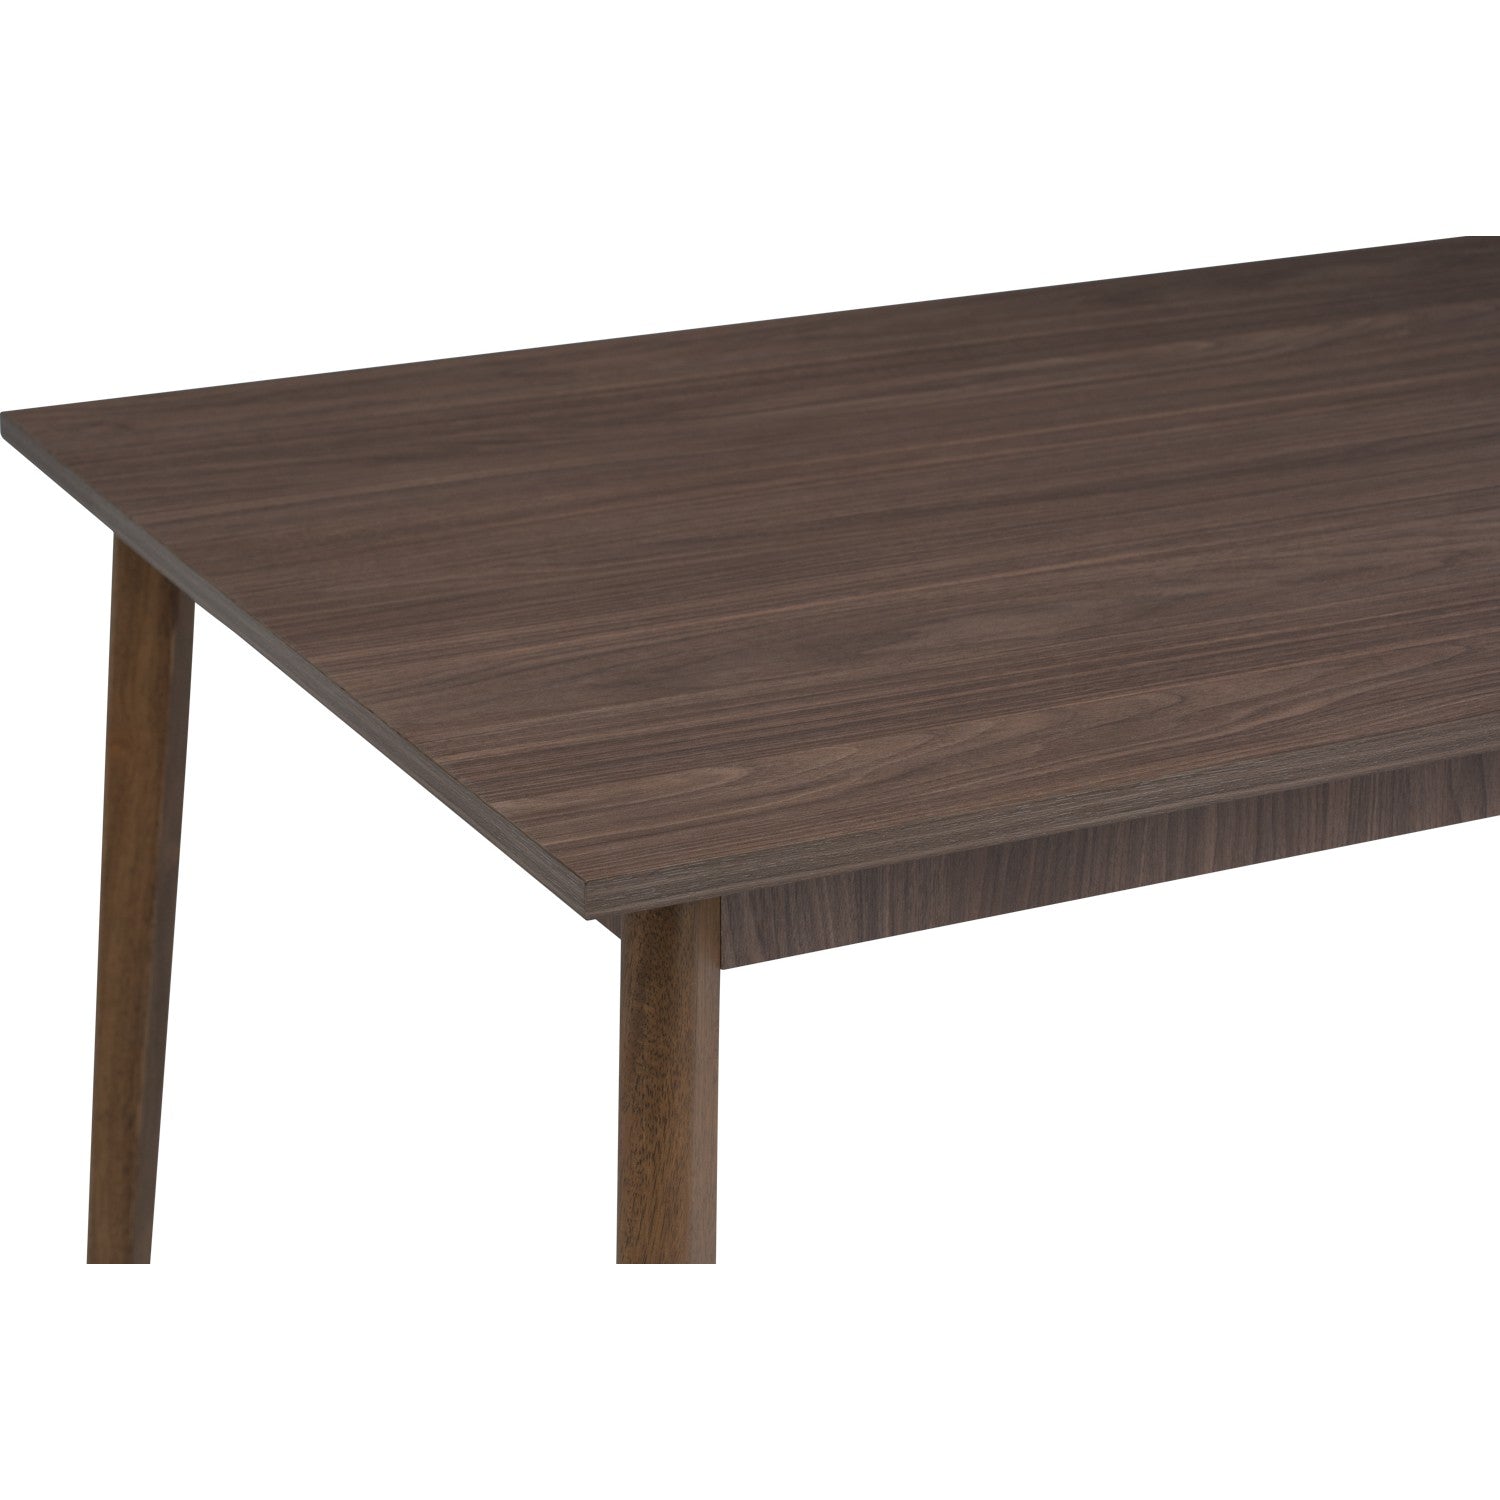 馬來西亞原裝進口實木傢俬 - NZ系列 - STARK 1.2米餐桌